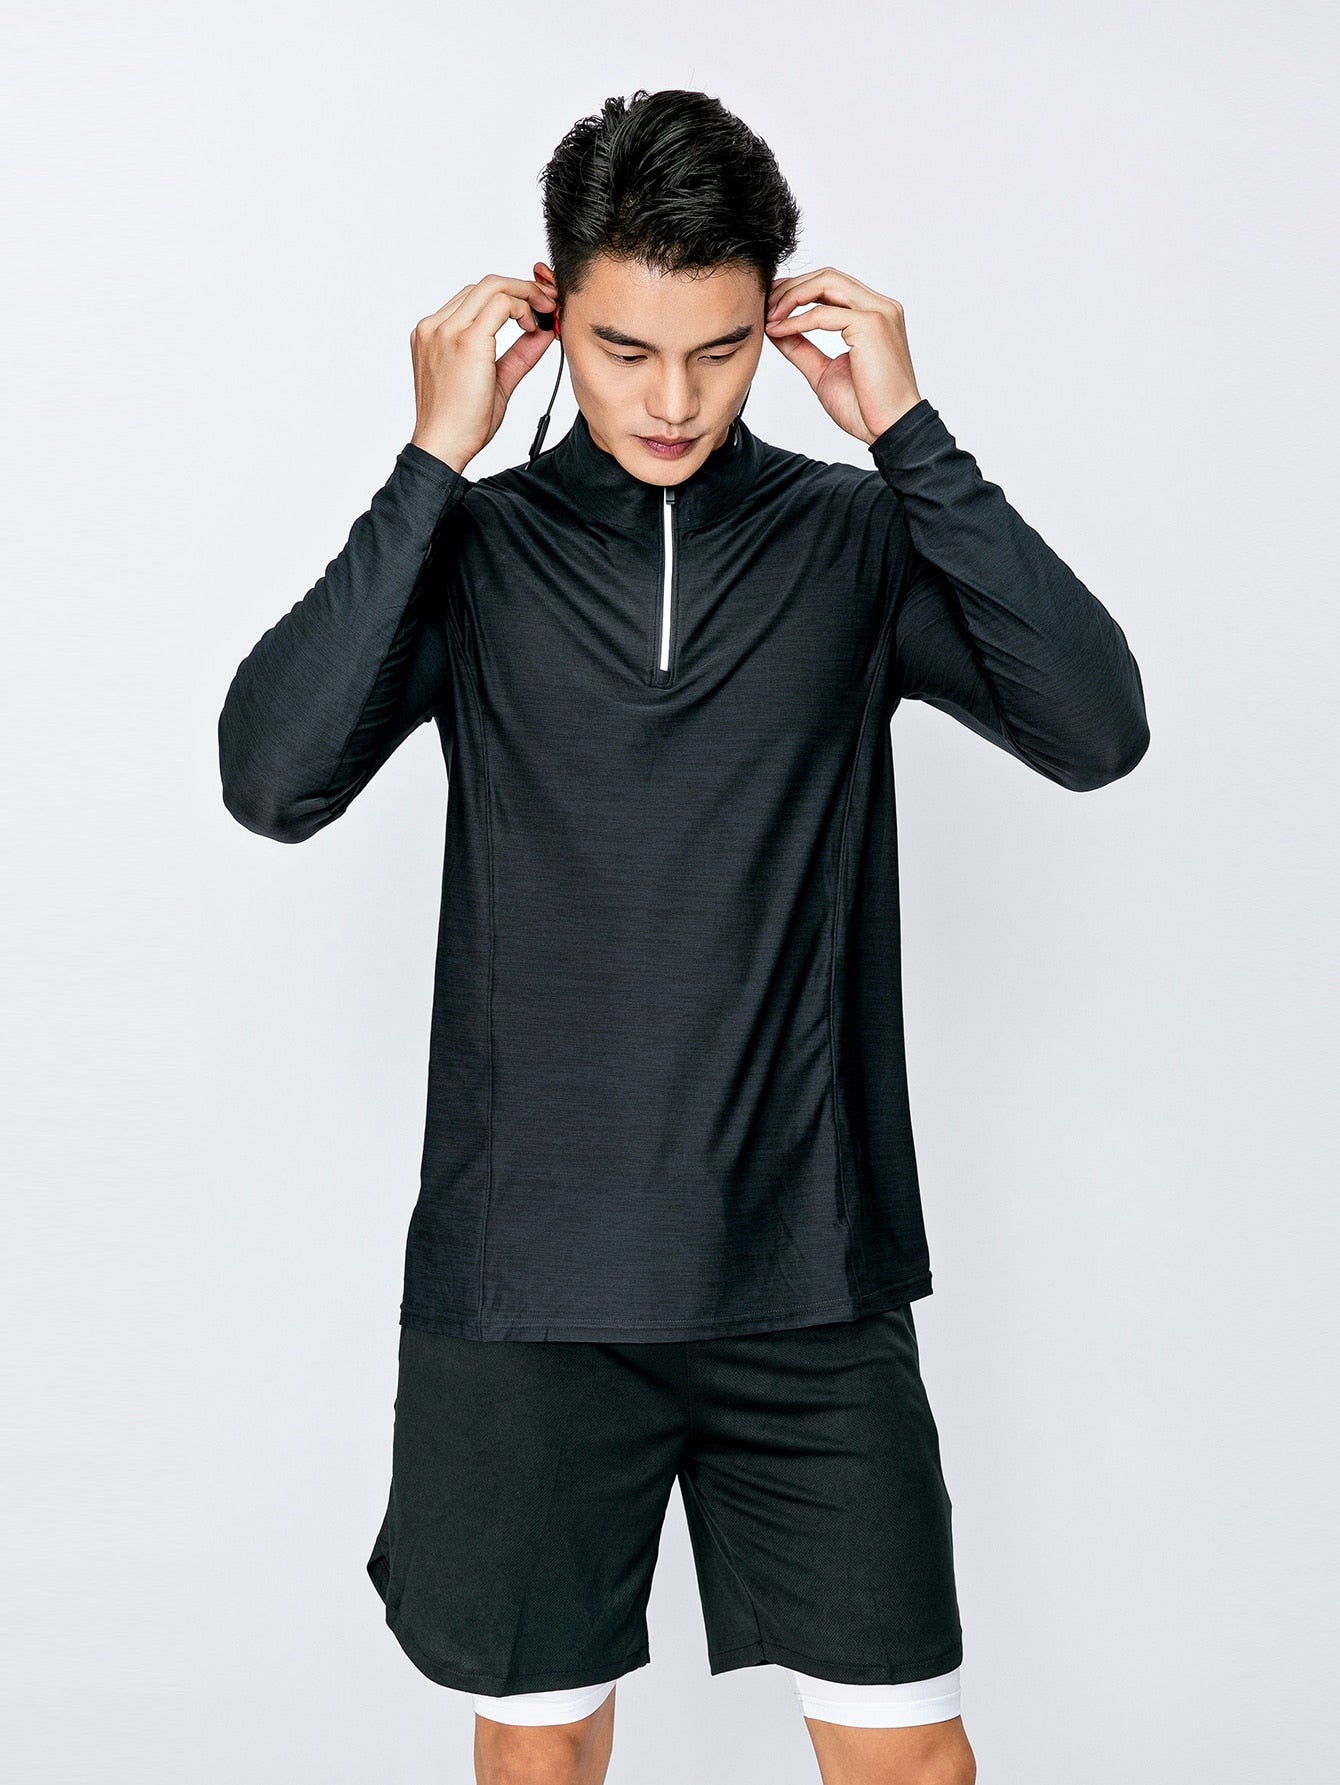 Men Quarter Zipper Yoga  Sweatshirt - Yoga Top for Men Yoga and Meditation Products - Personal Hour